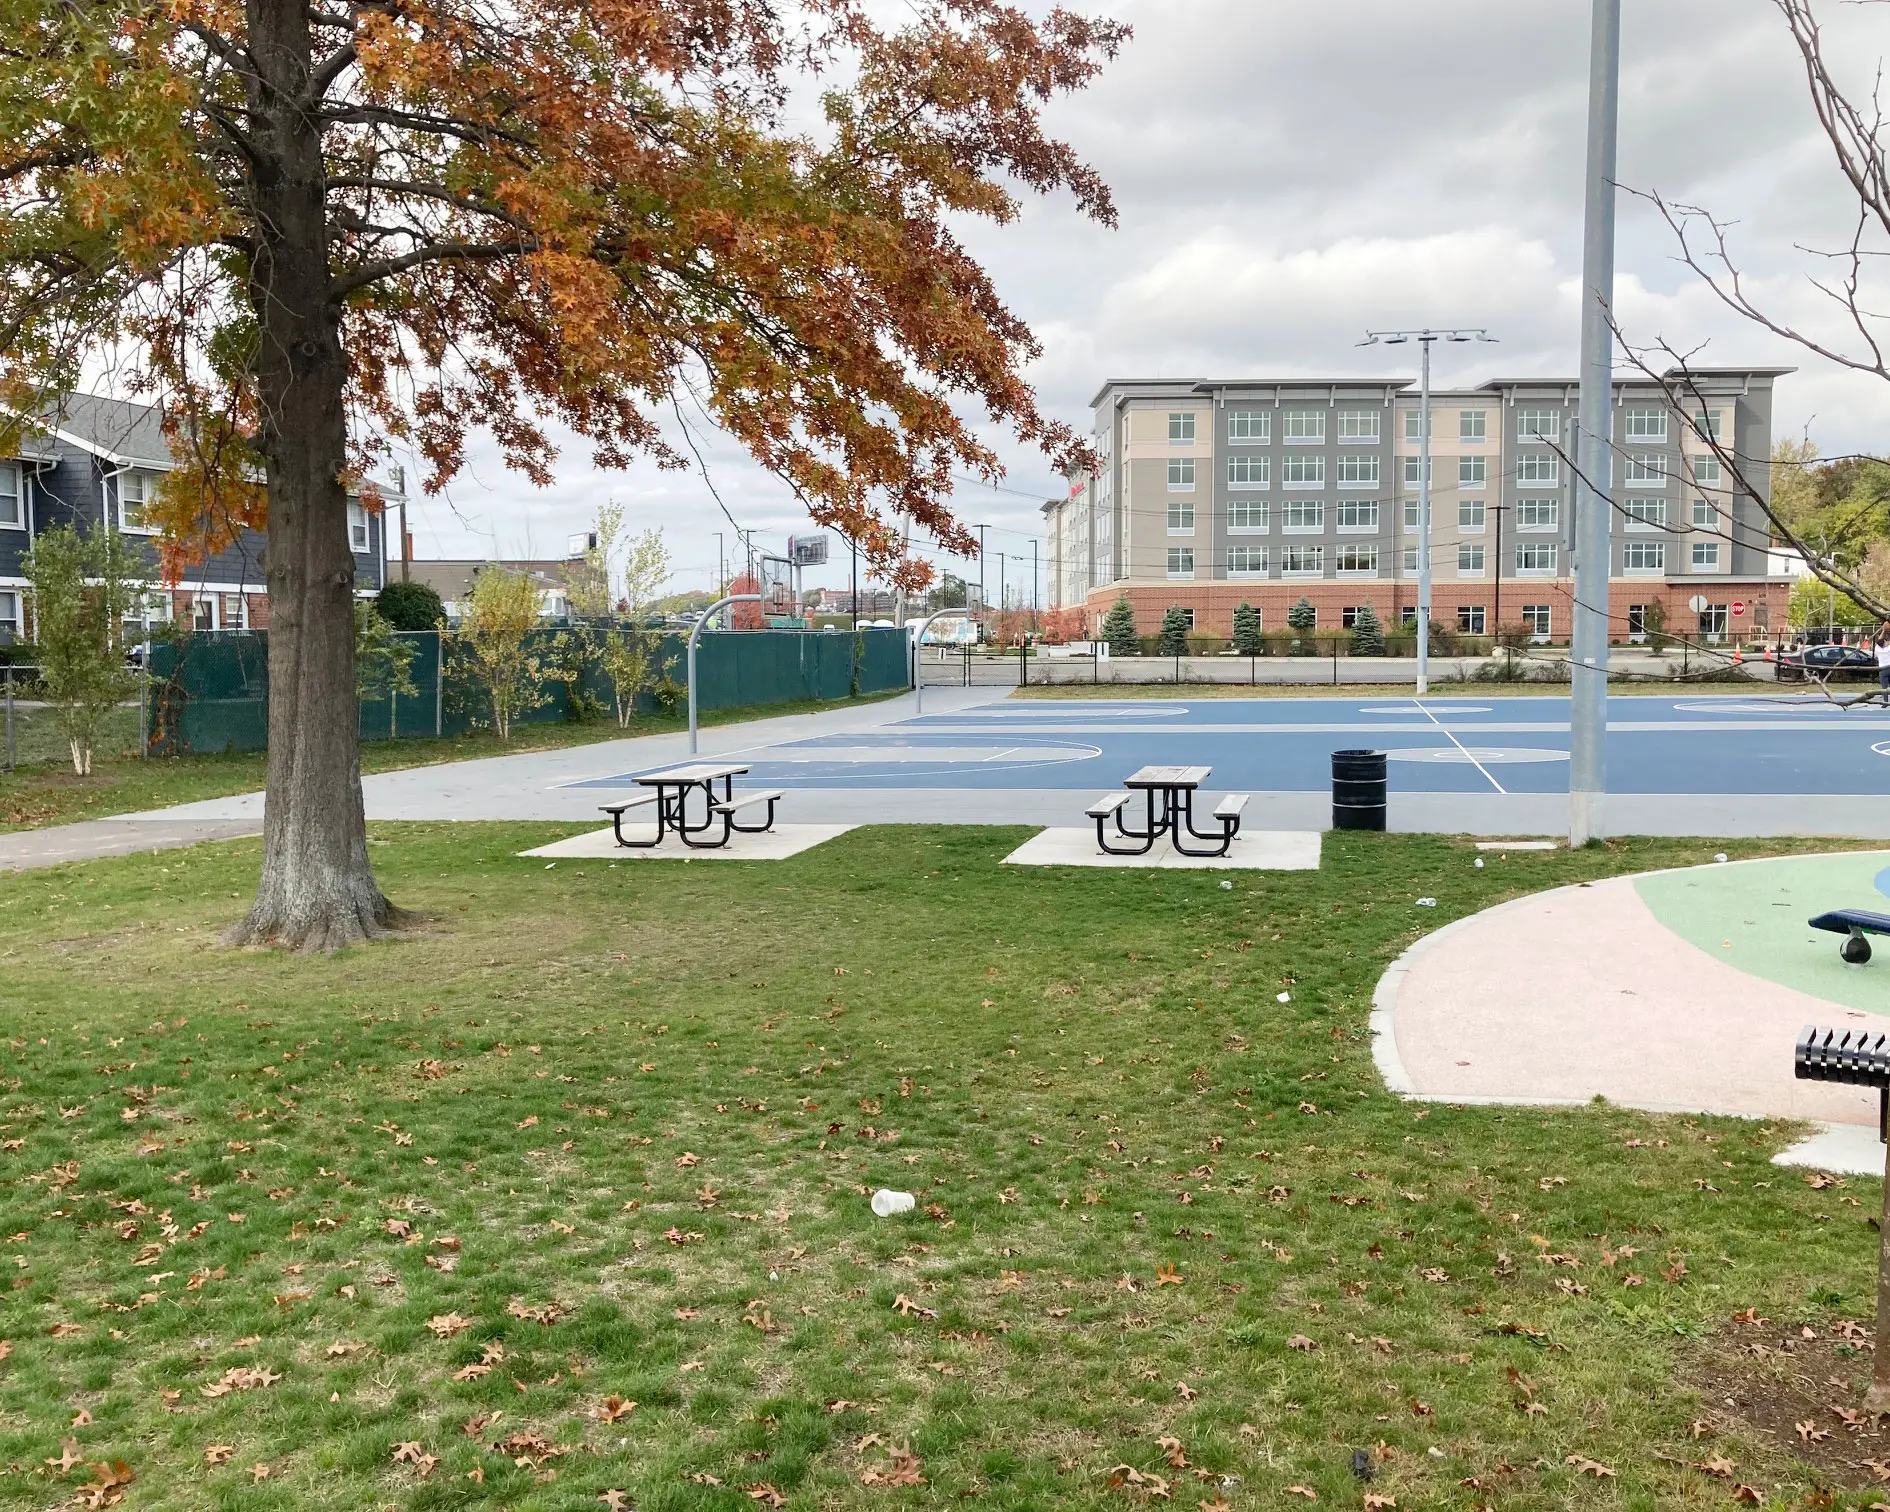 Noyes Playground picnic tables